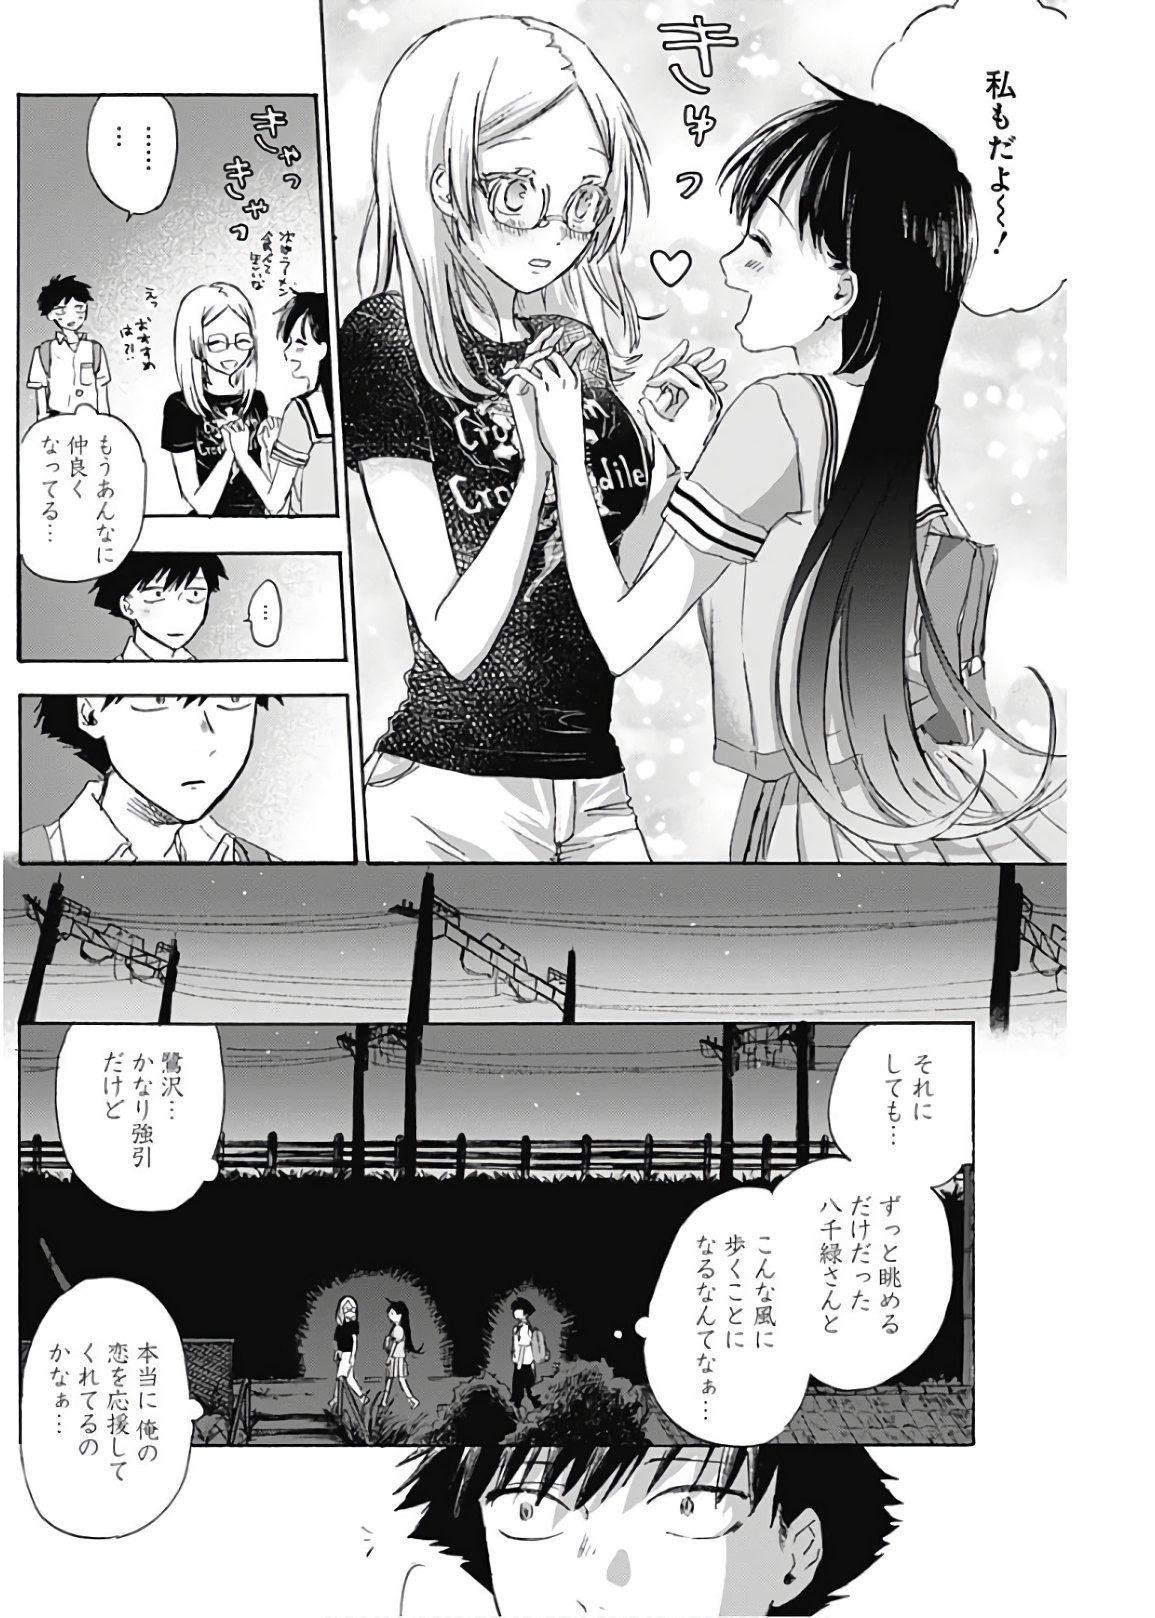 Kawaisou ni ne, Genki-kun - Chapter 007 - Page 12